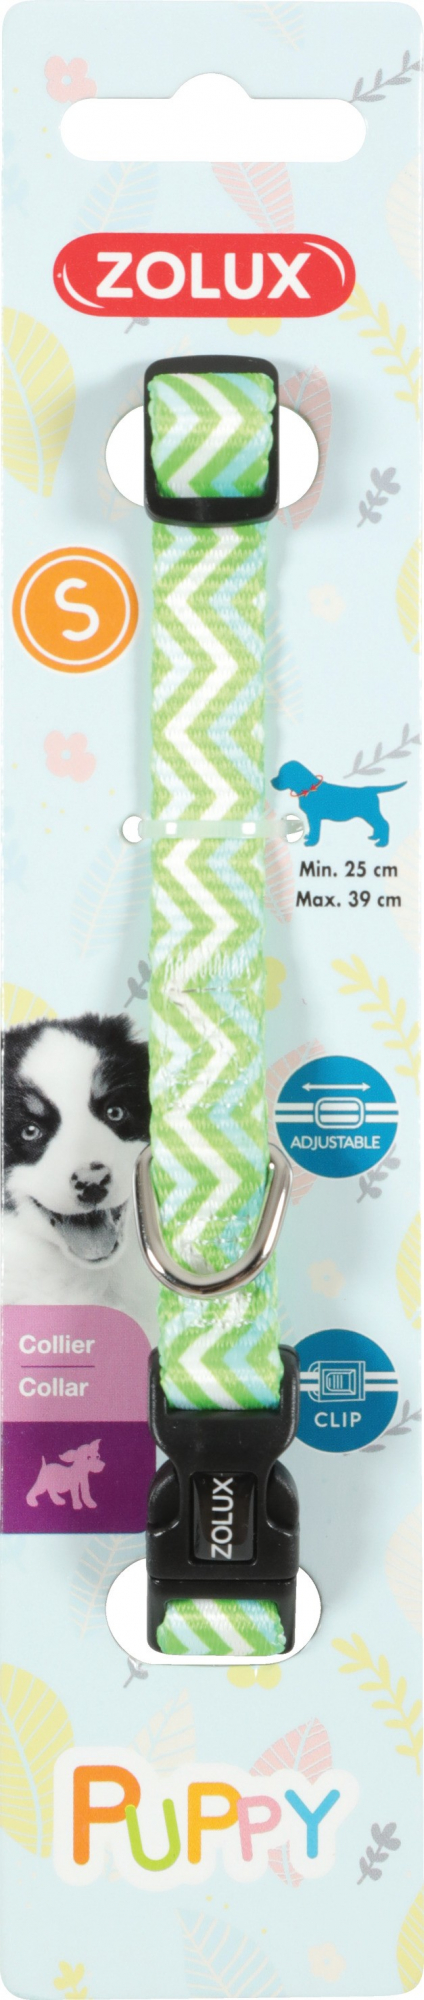 Collar de nylon ajustable para cachorros Puppy Pixie - verde